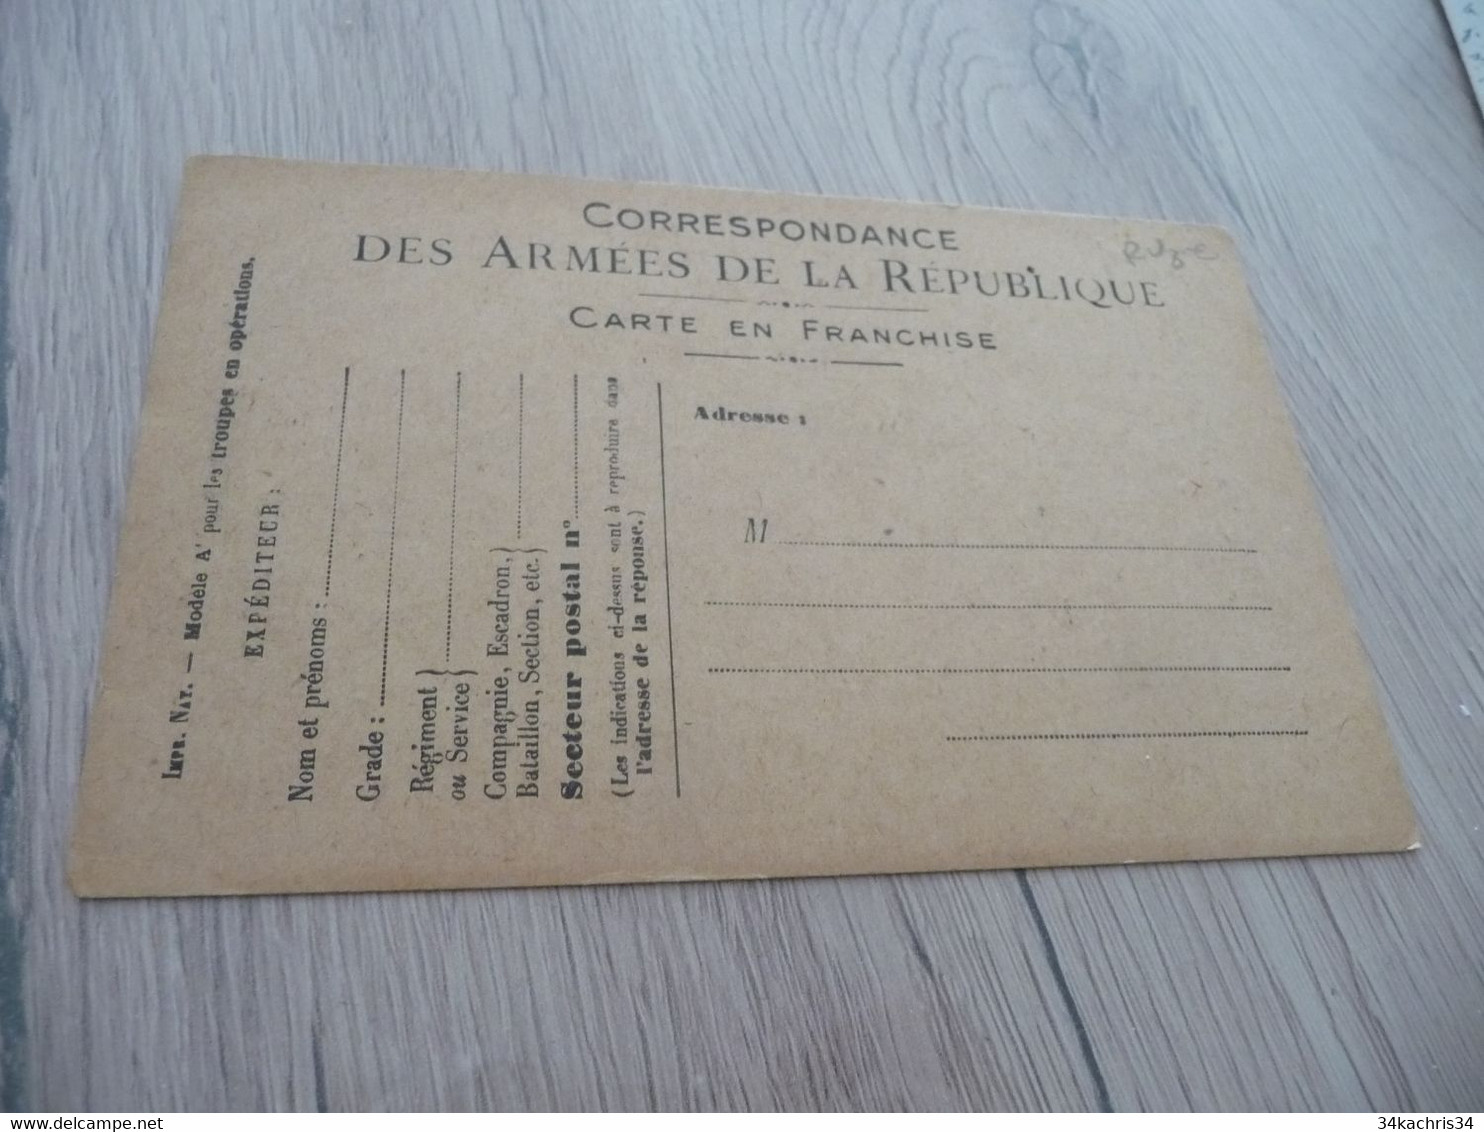 CPFM Carte Postale Franchise Militaire Guerre 14/18 Illustre Vierge Emprunt Vierge - Briefe U. Dokumente